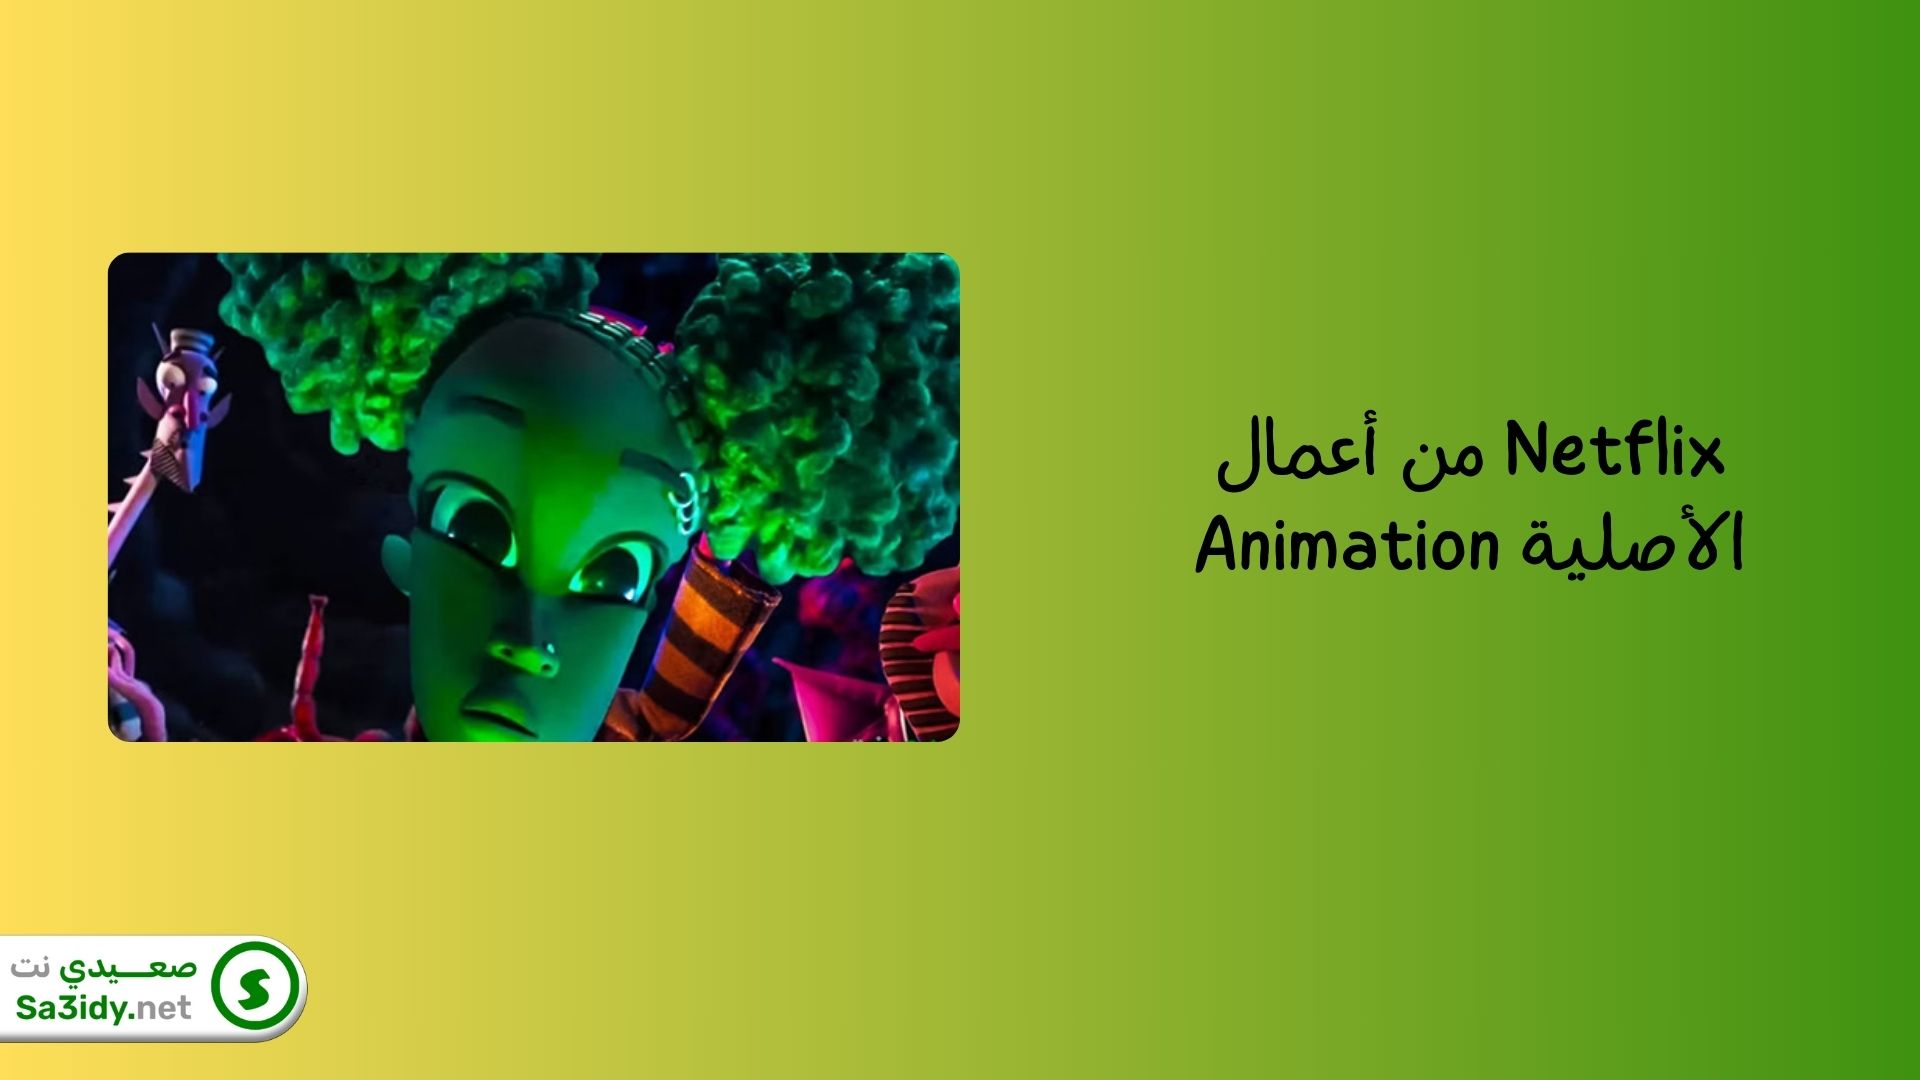 افضل 10 شركات رسوم متحركة في العالم والشرق الأوسط